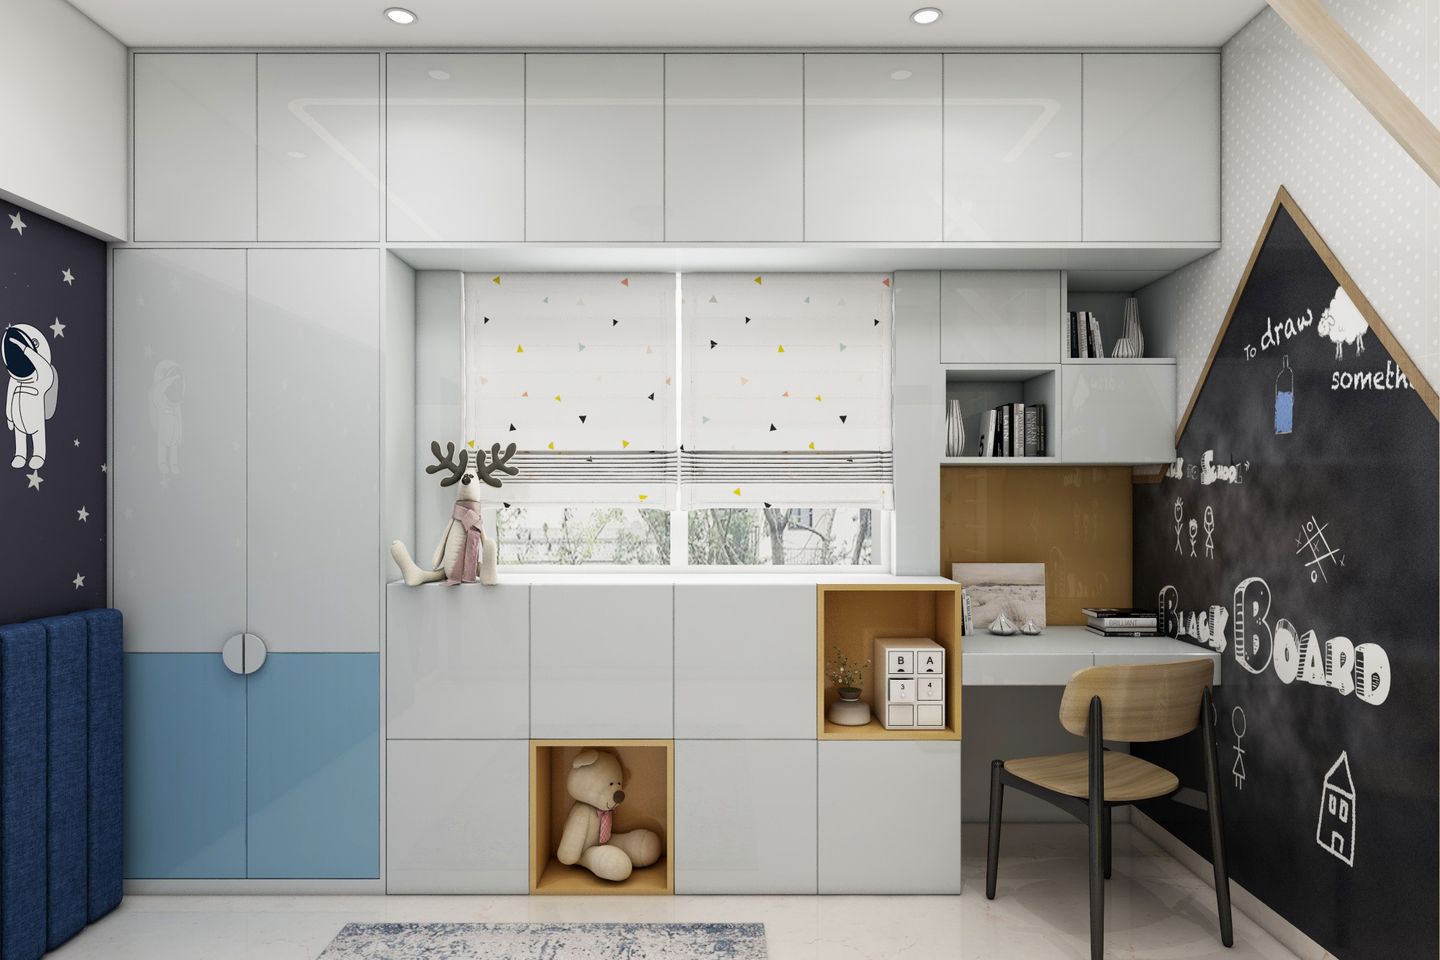 2-Door Swing Wardrobe Design In Grey And Blue - Livspace